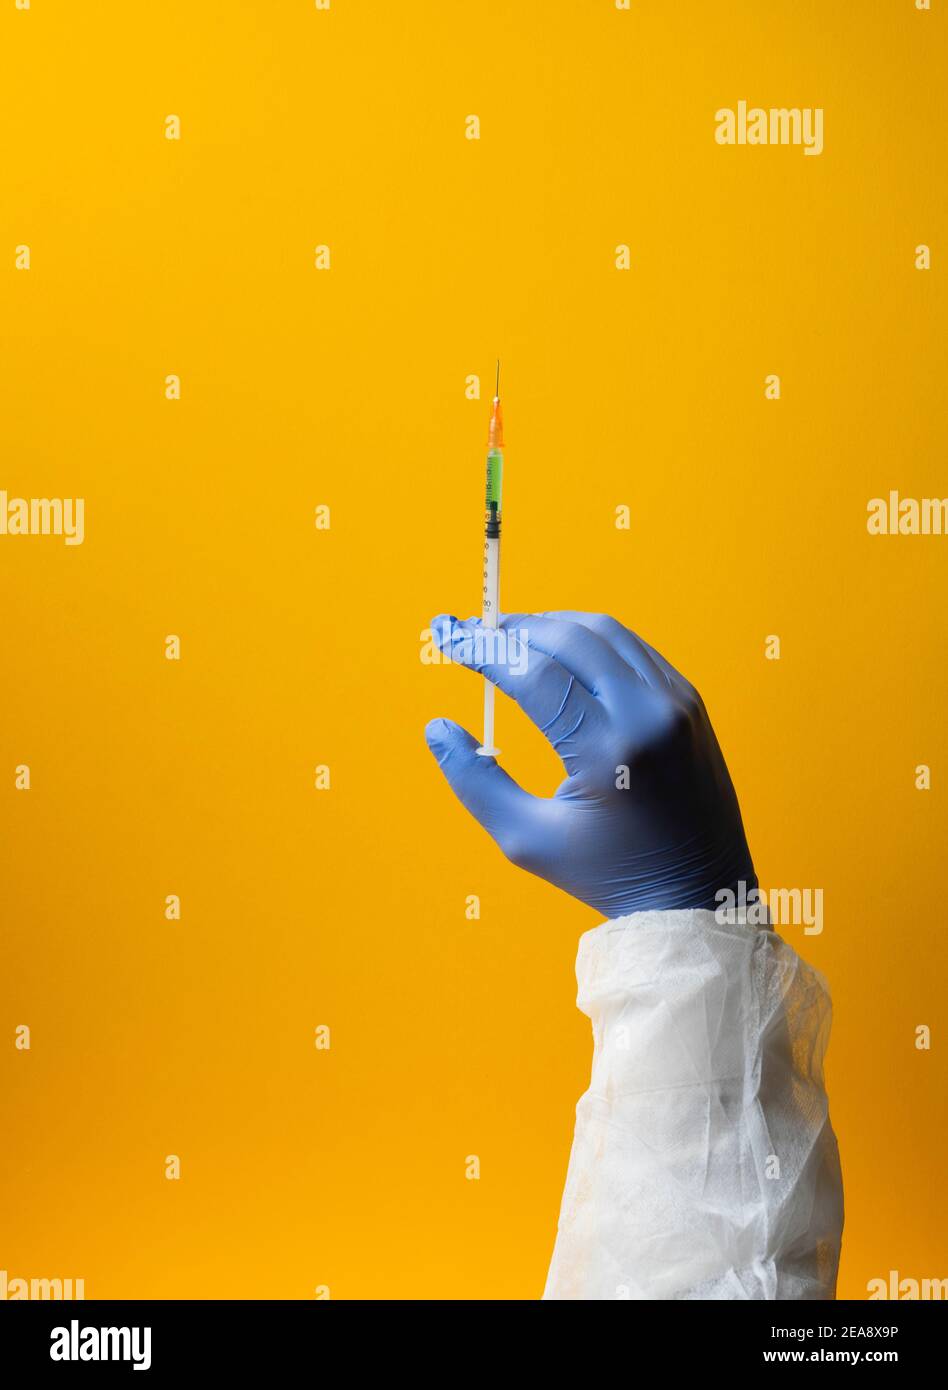 Laboratorio mano in guanti medici trattamento vaccino ricerca su sfondo giallo. Immagine verticale Foto Stock